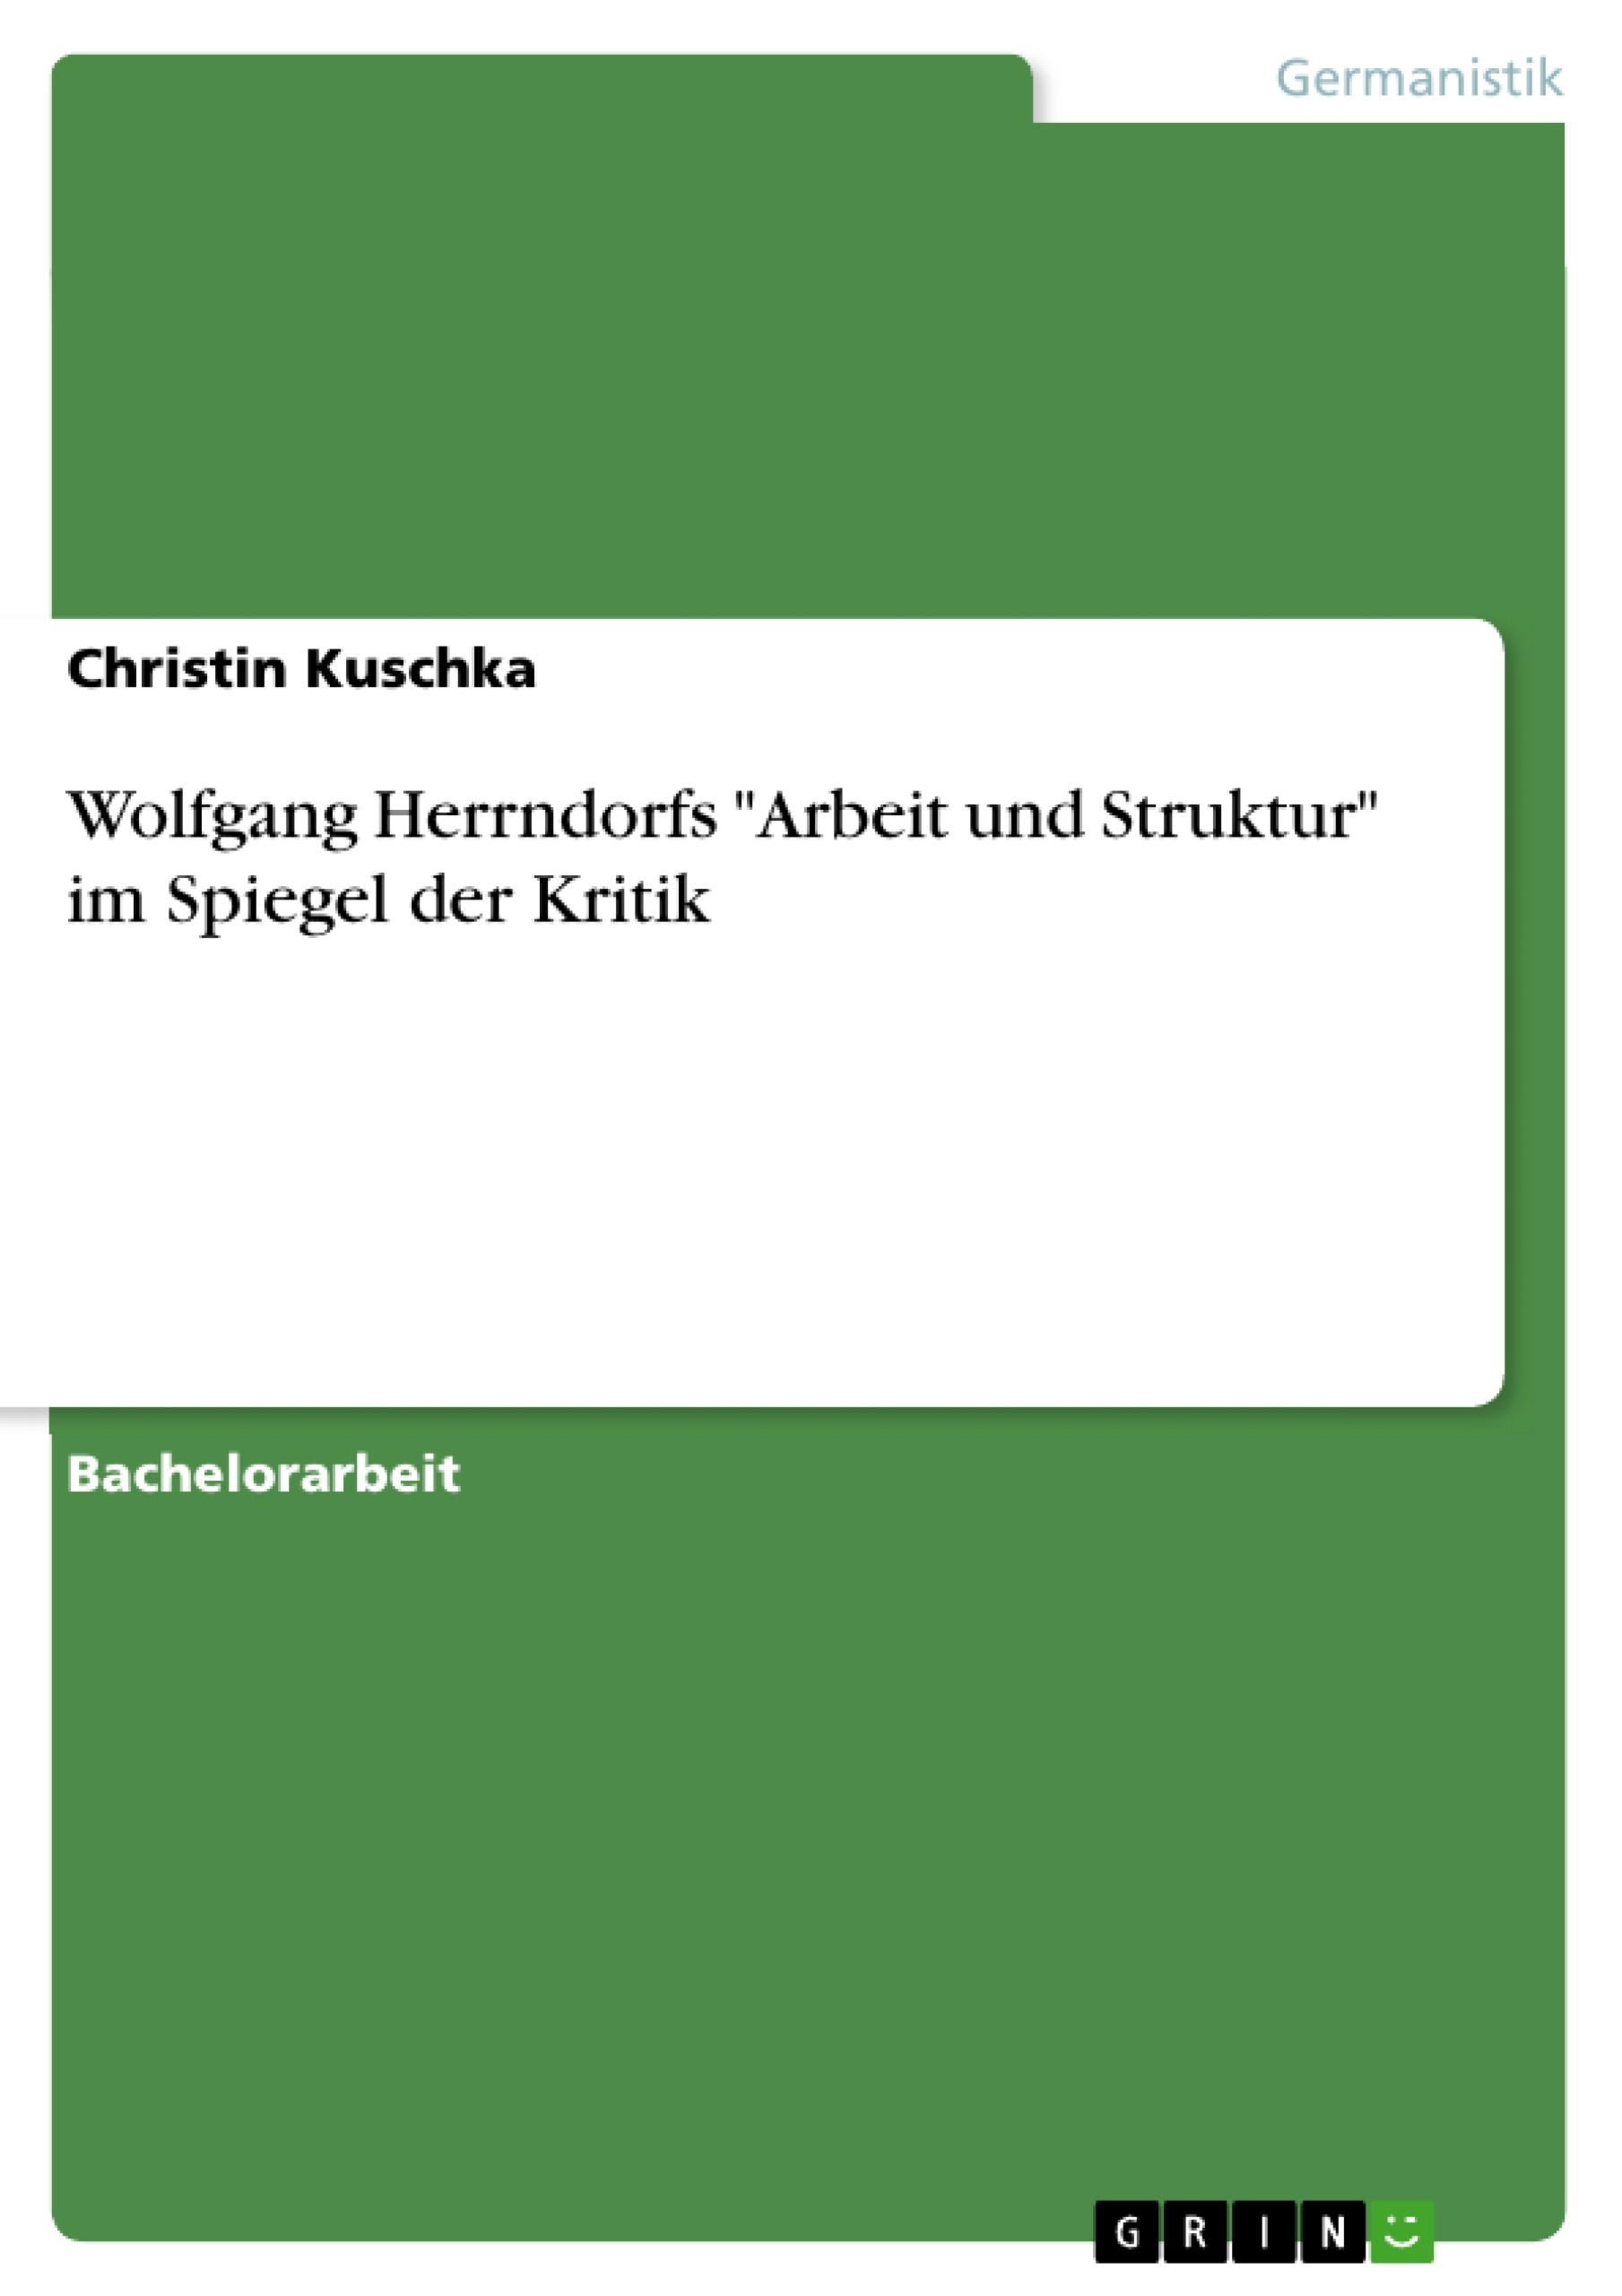 Título: Wolfgang Herrndorfs "Arbeit und Struktur" im Spiegel der Kritik